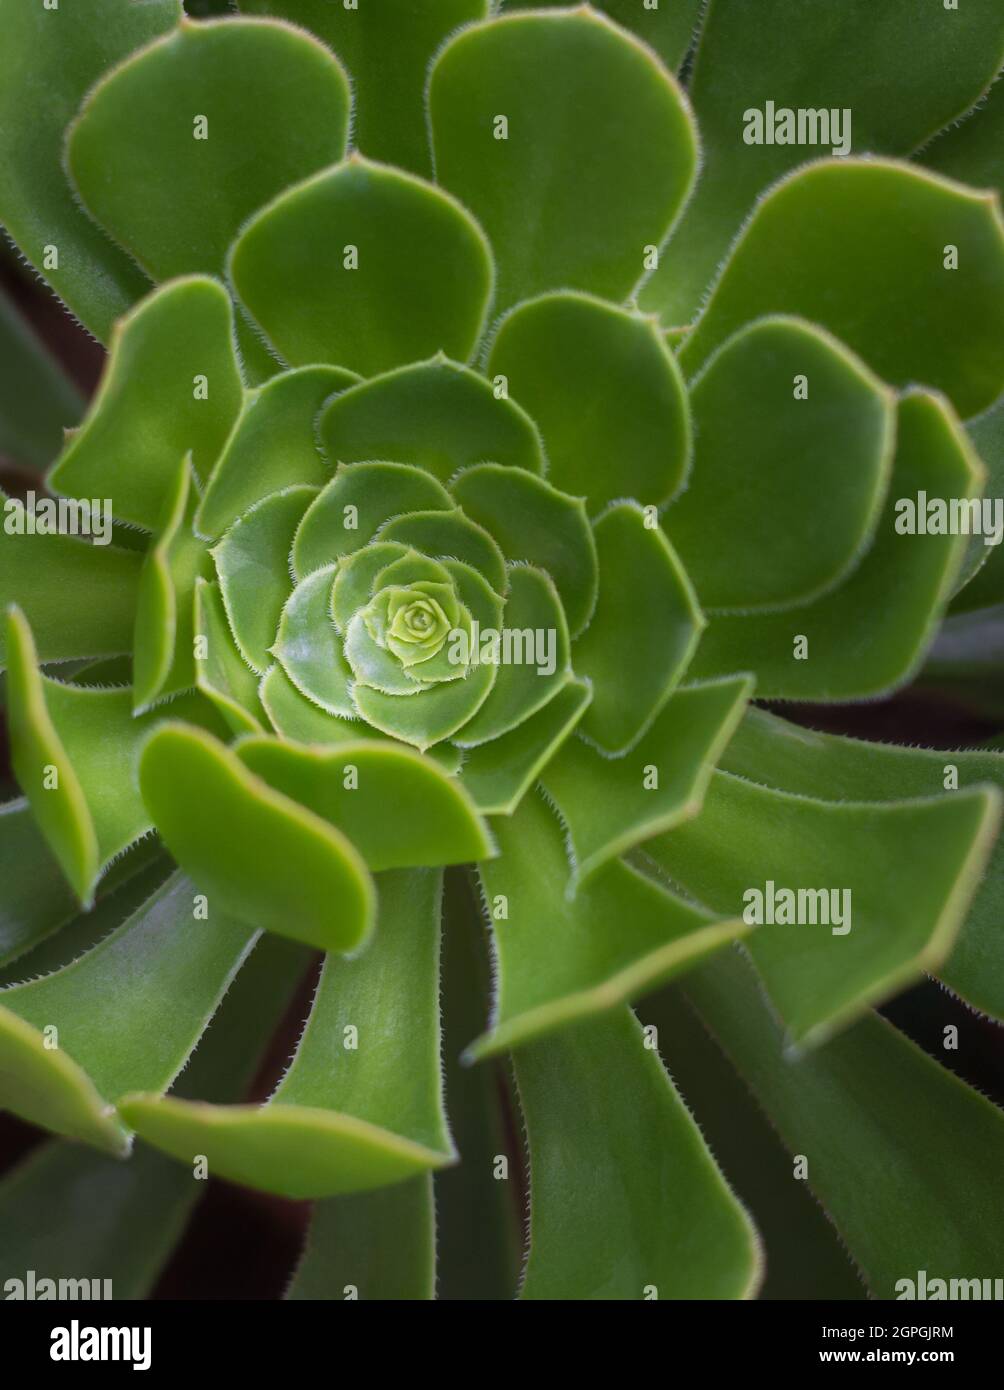 Hellgrün echeveria norma Pflanze Nahaufnahme, schnell wachsende Innen, Outdoor Sukulente Pflanze, Hintergrund, Textur, Tapete für die Gestaltung Stockfoto